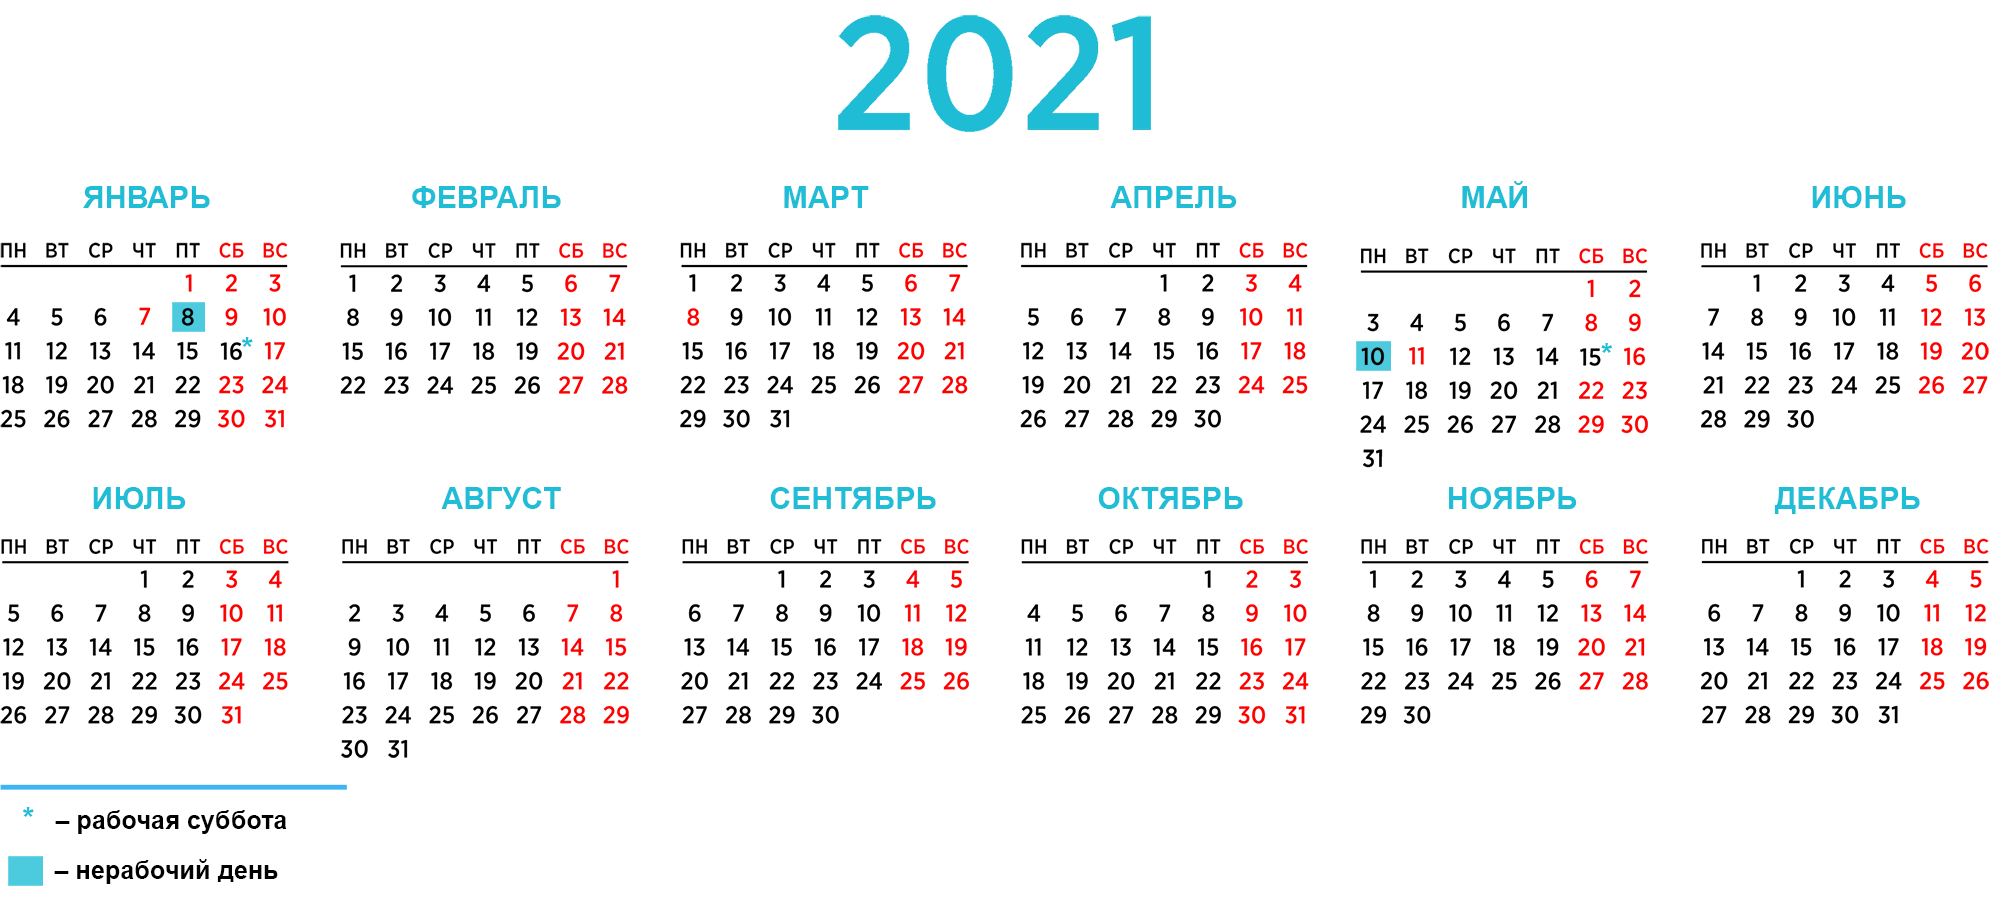 Kalendar Perenosa Rabochih Dnej V 2021 Godu